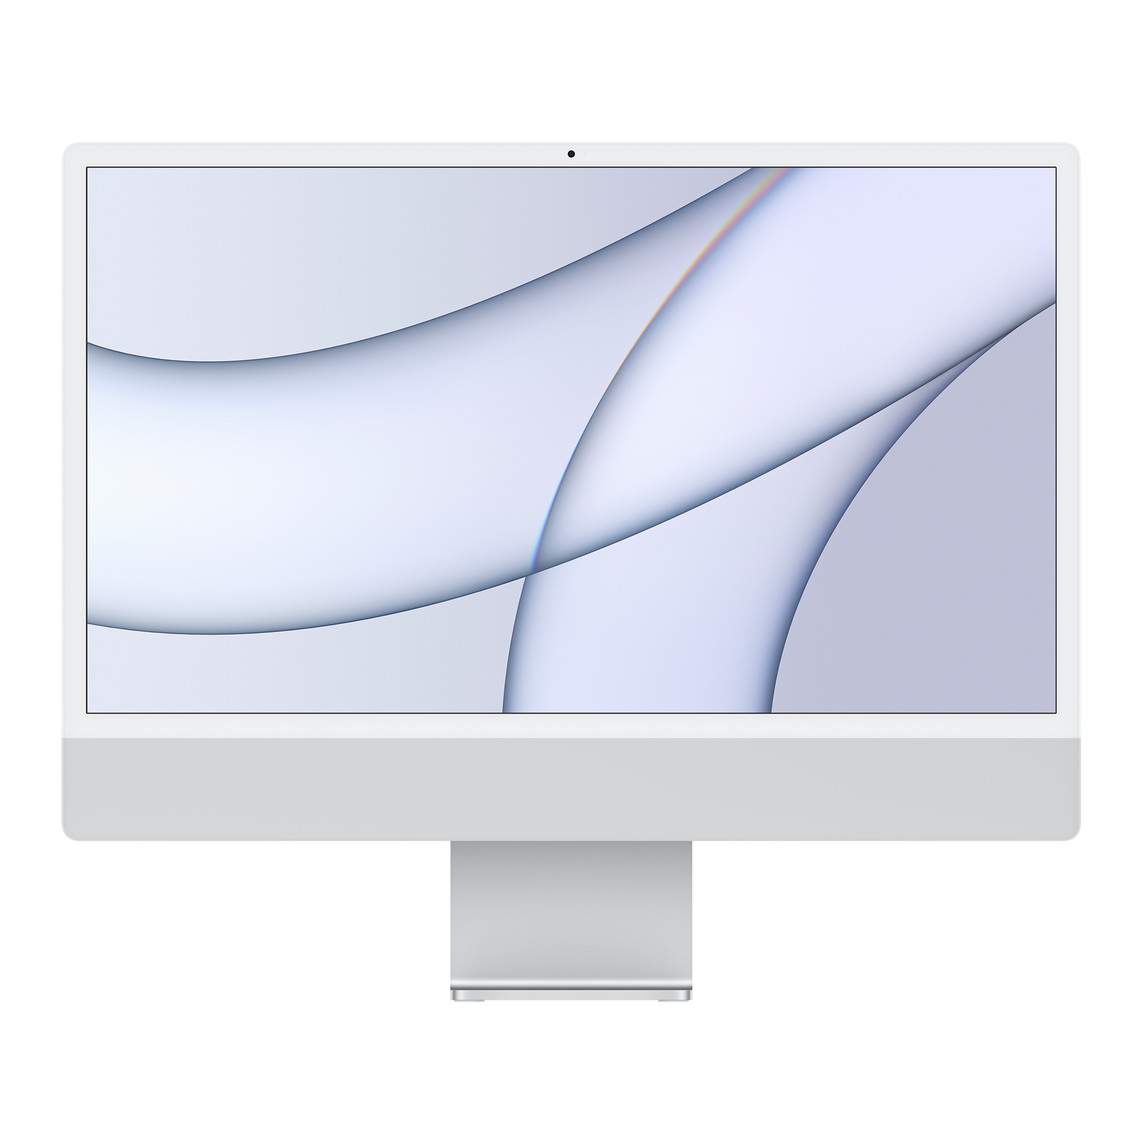 iMac 的正面外观，展示白色显示屏边框、银色外壳和铝金属底座。